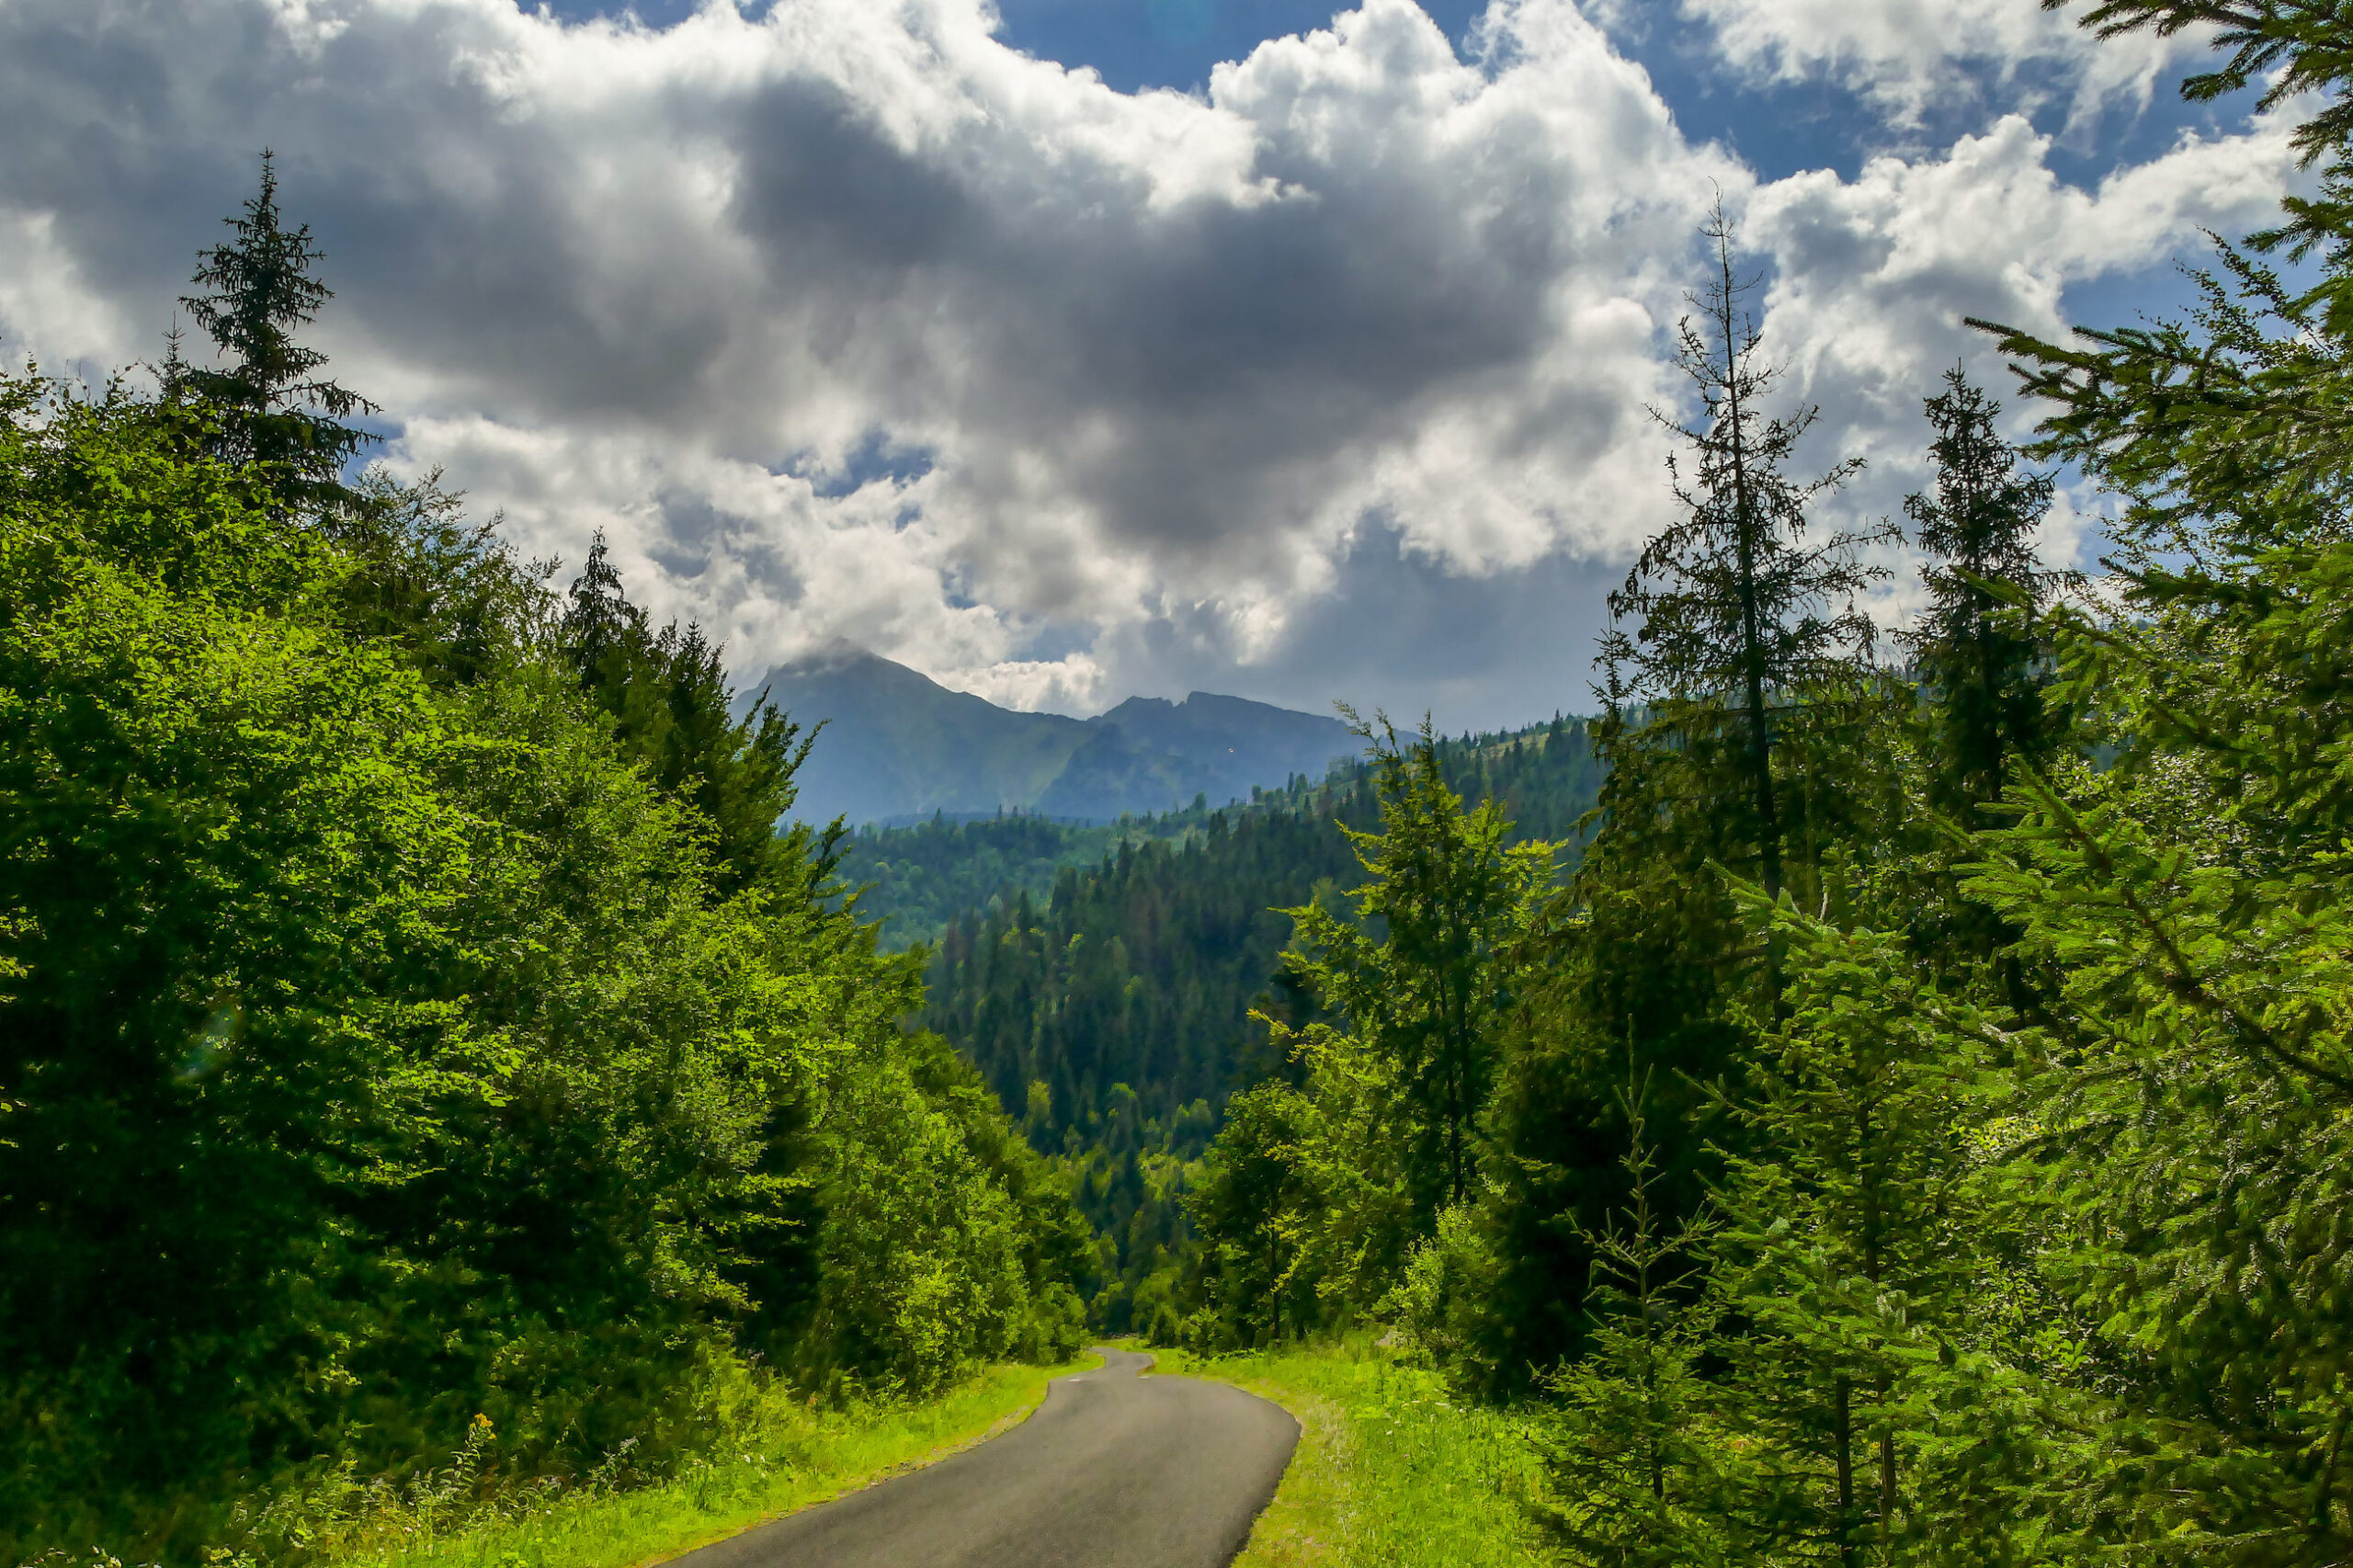 Droga rowerowa do Osturni, Tatry wystajace ponad koronami drzew